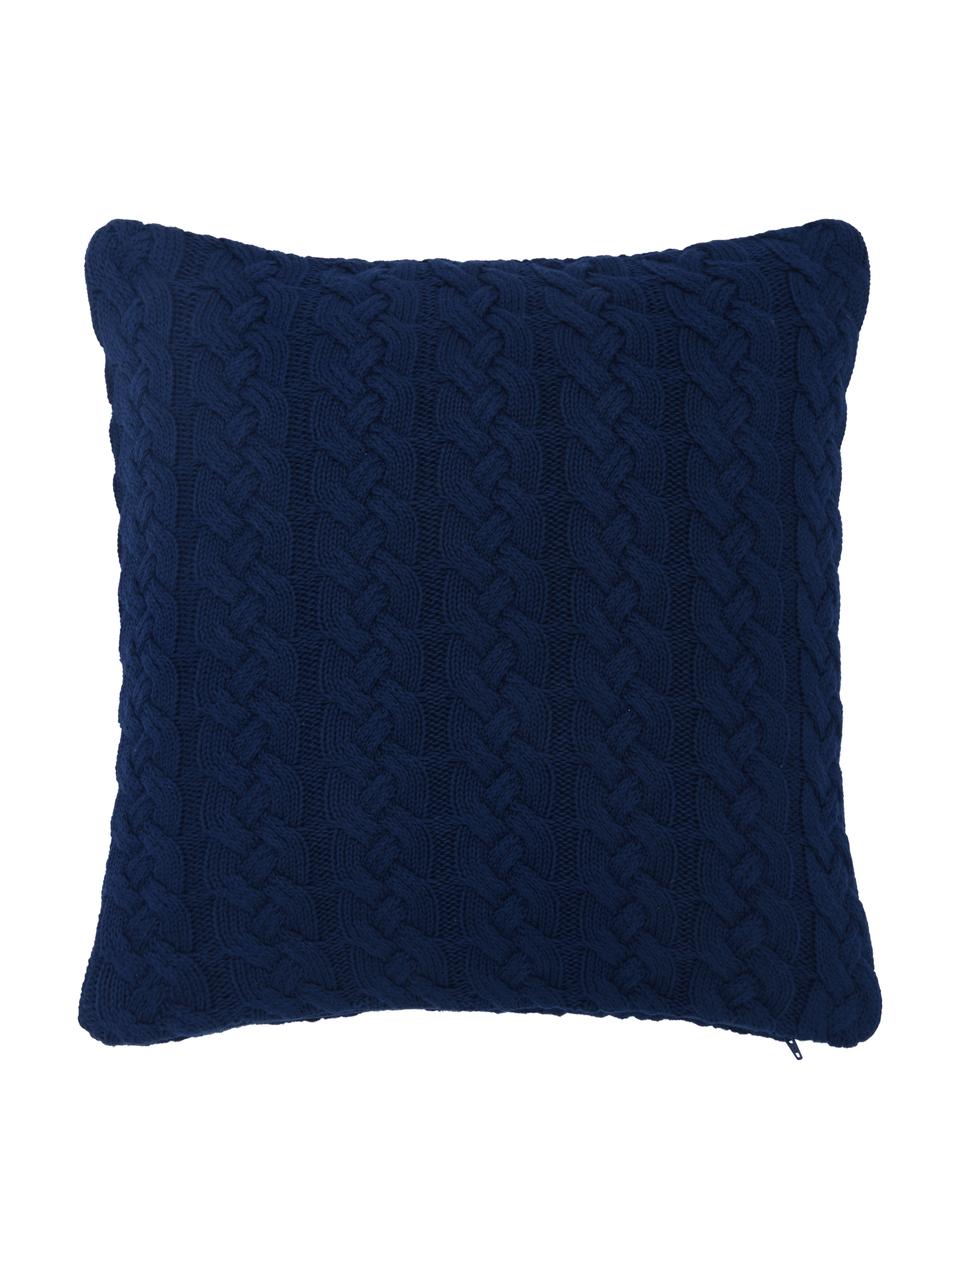 Poszewka na poduszkę z dzianiny Caleb, 100% bawełna, Niebieski, S 40 x D 40 cm